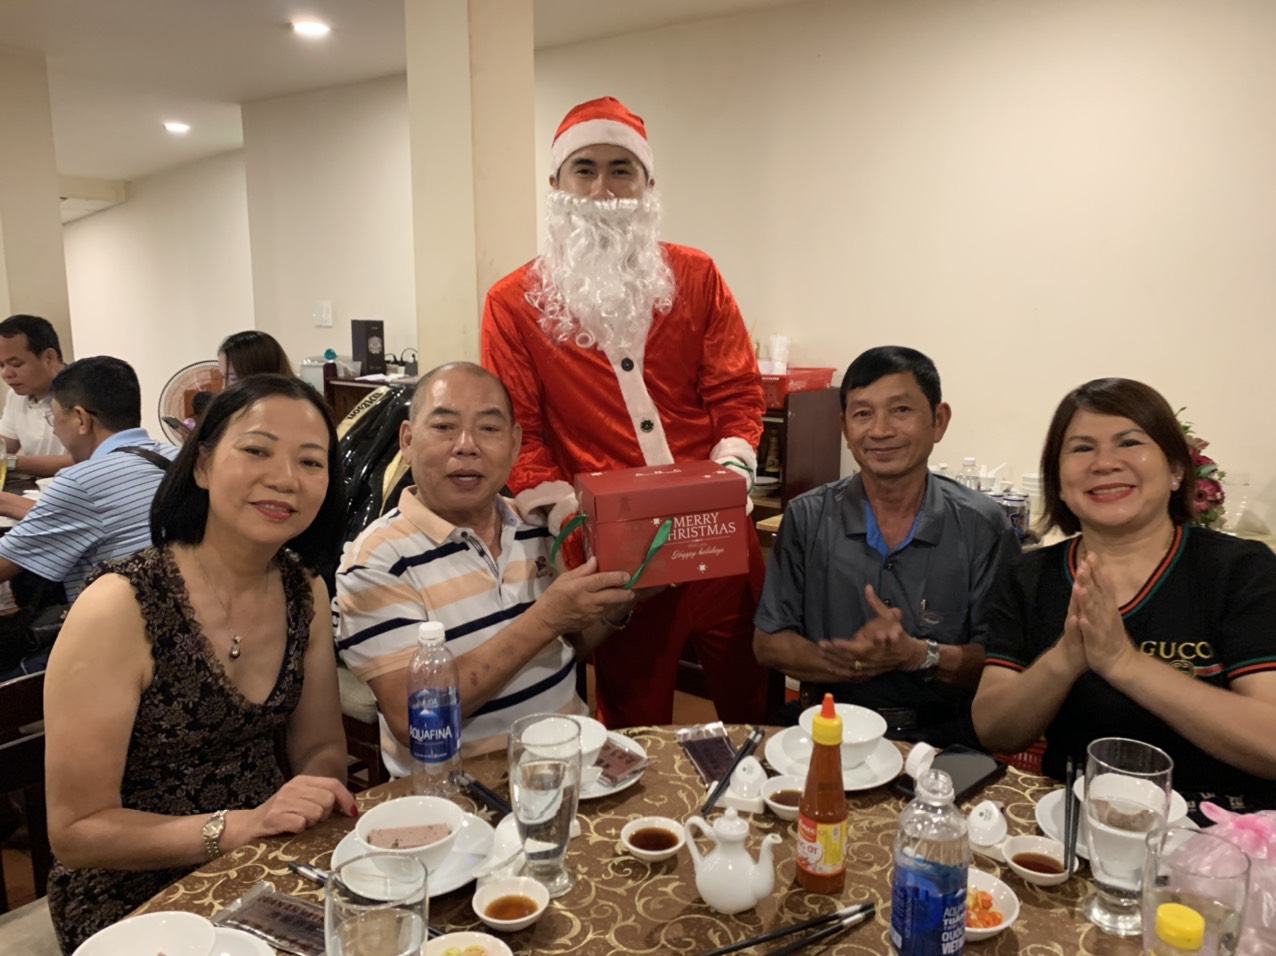 Noel năm 2019 khách đến đông đúc và nhận được quà từ ông già Noel đây - Haihoangbinhtan.com 8